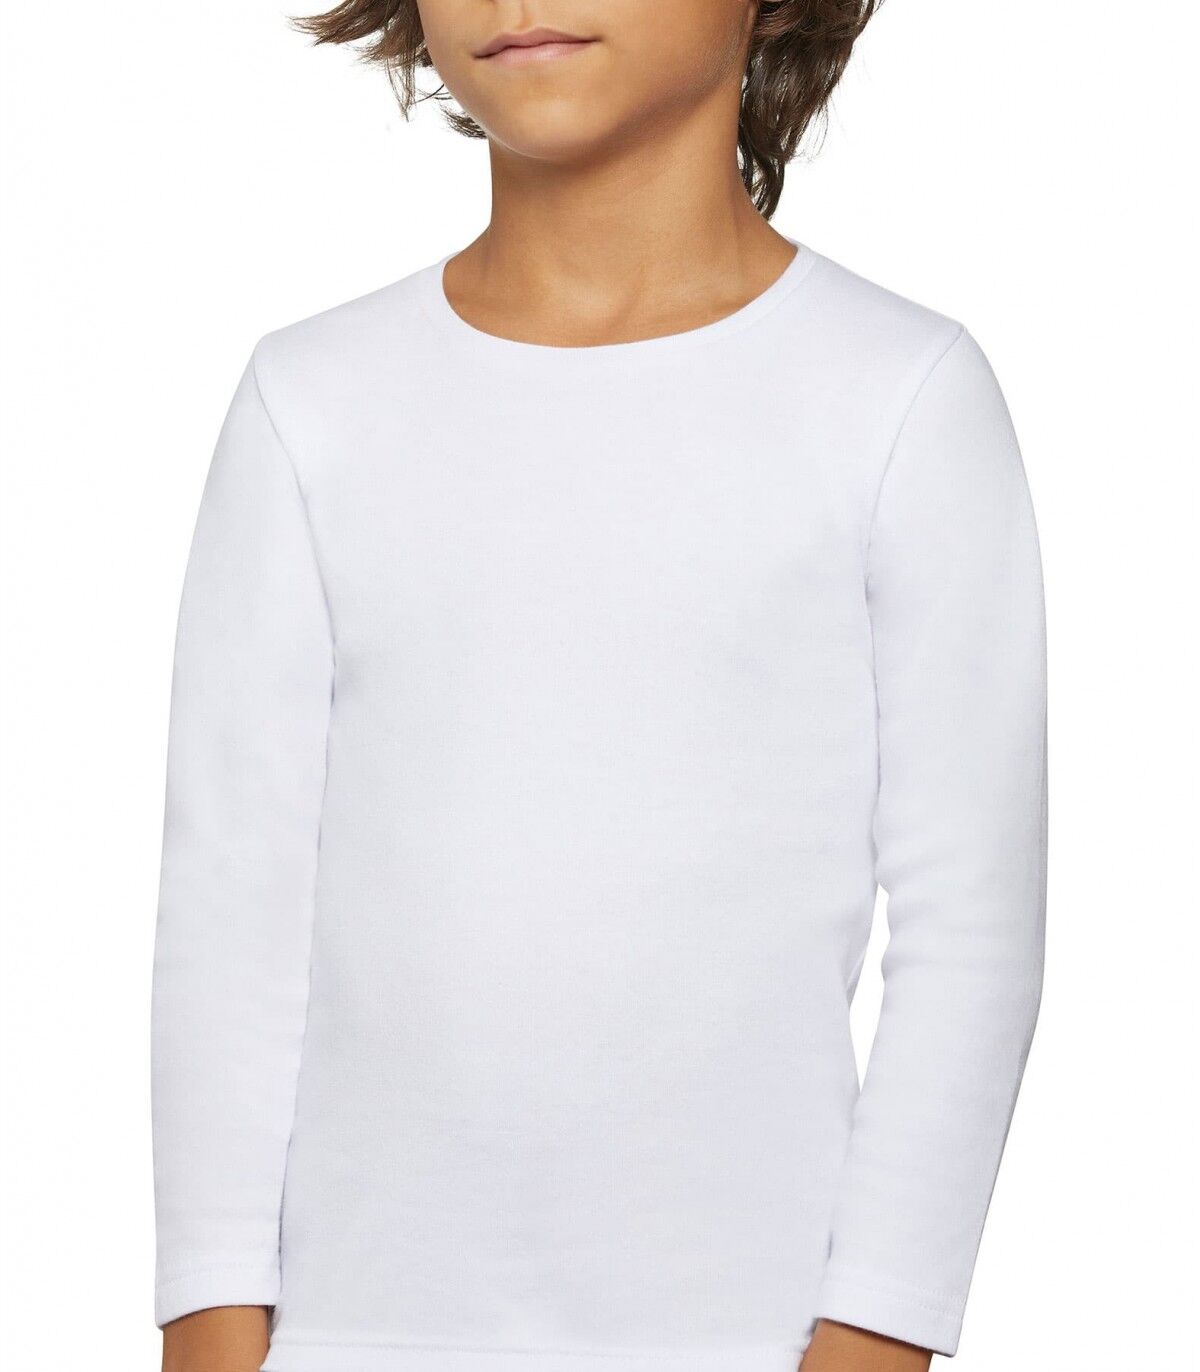 Camiseta infantil Térmica Ysabel Mora 18301 4 Blanco